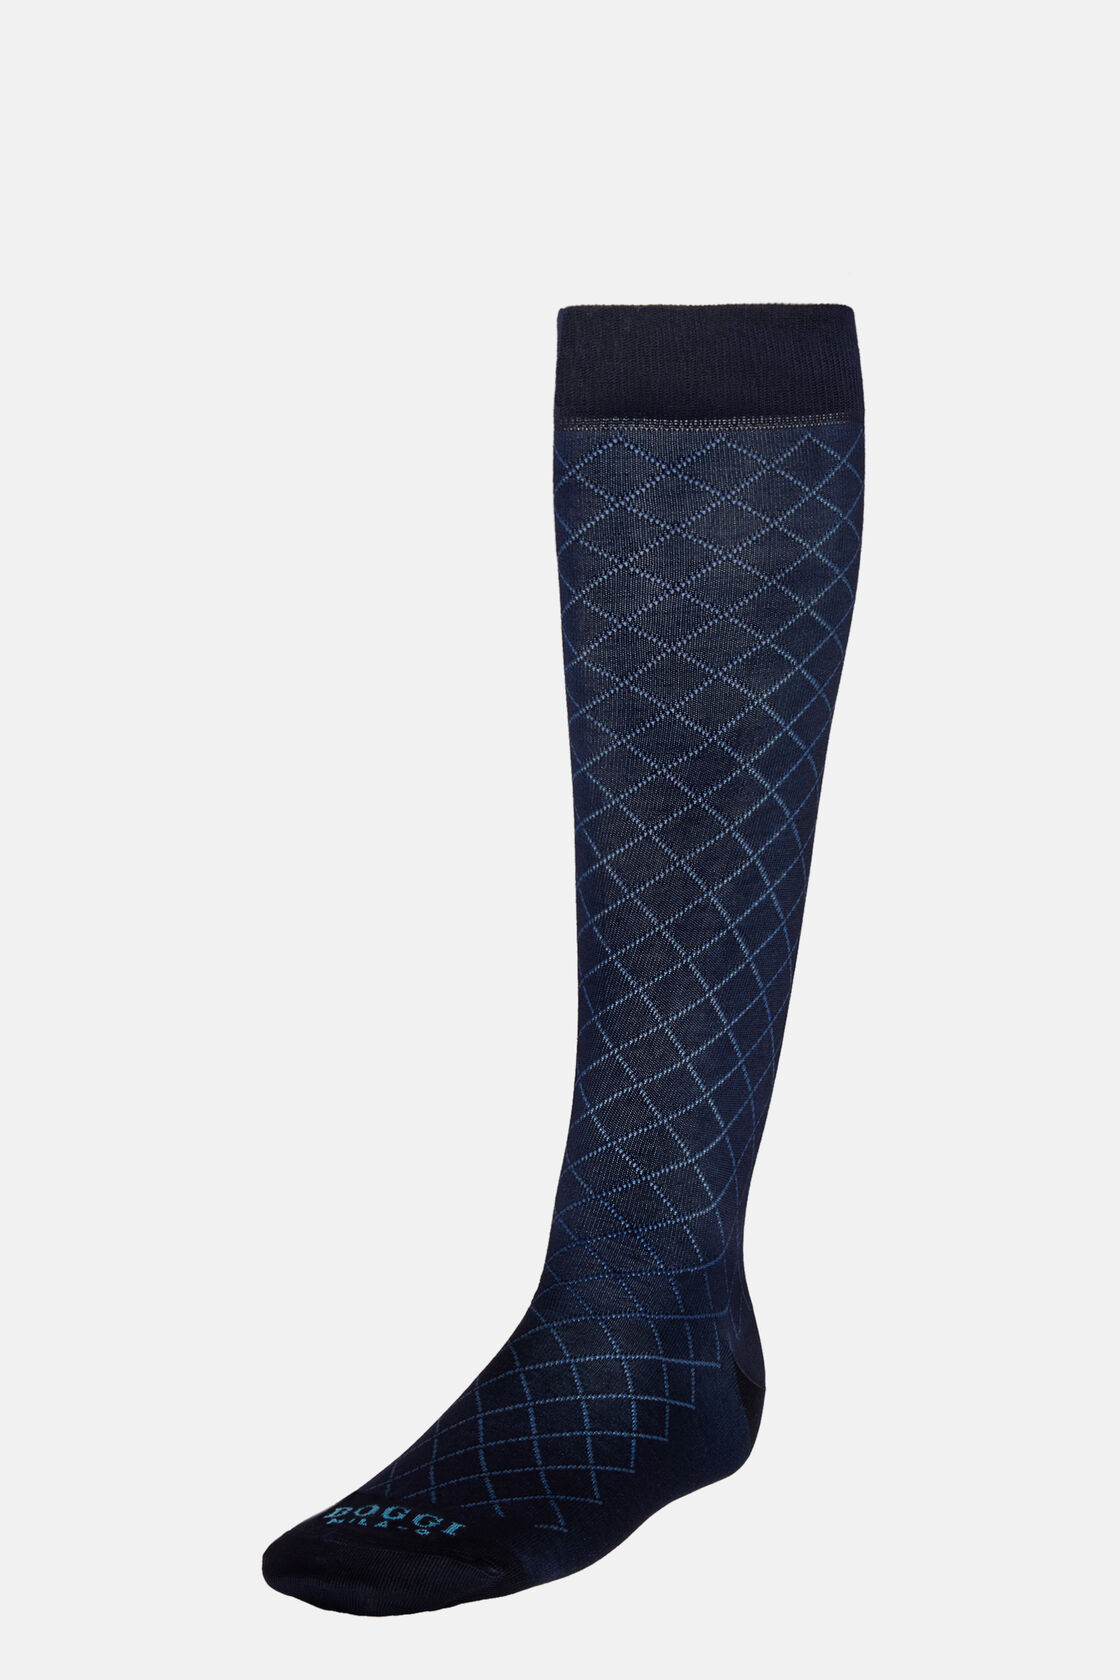 Chaussettes Motif Géométrique En Coton Mélangé, bleu marine, hi-res